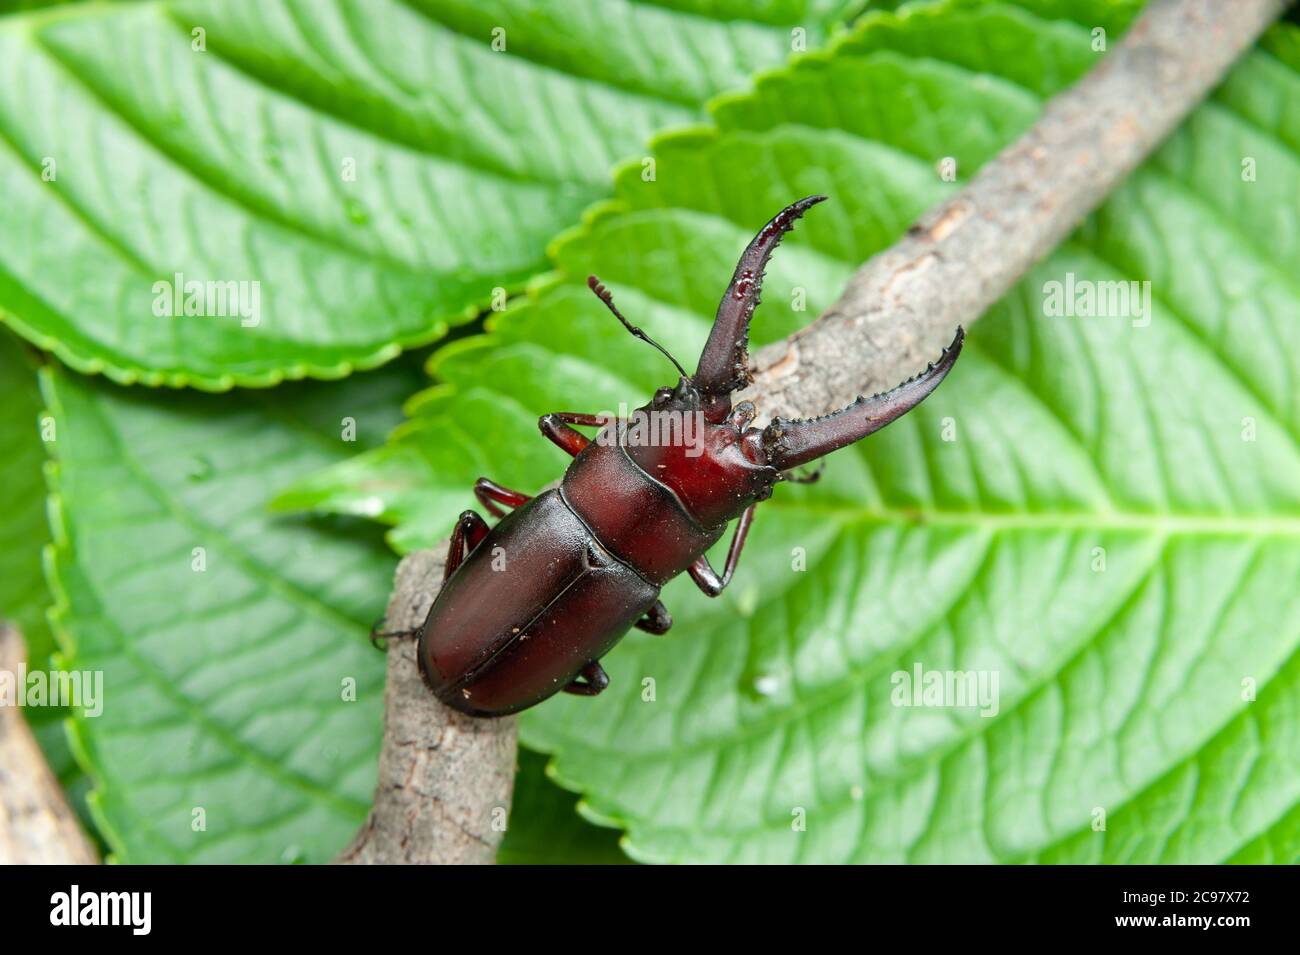 El escarabajo japonés llamado en japón kuwagata mushi. Aislado sobre fondo de hojas verdes. Foto de stock